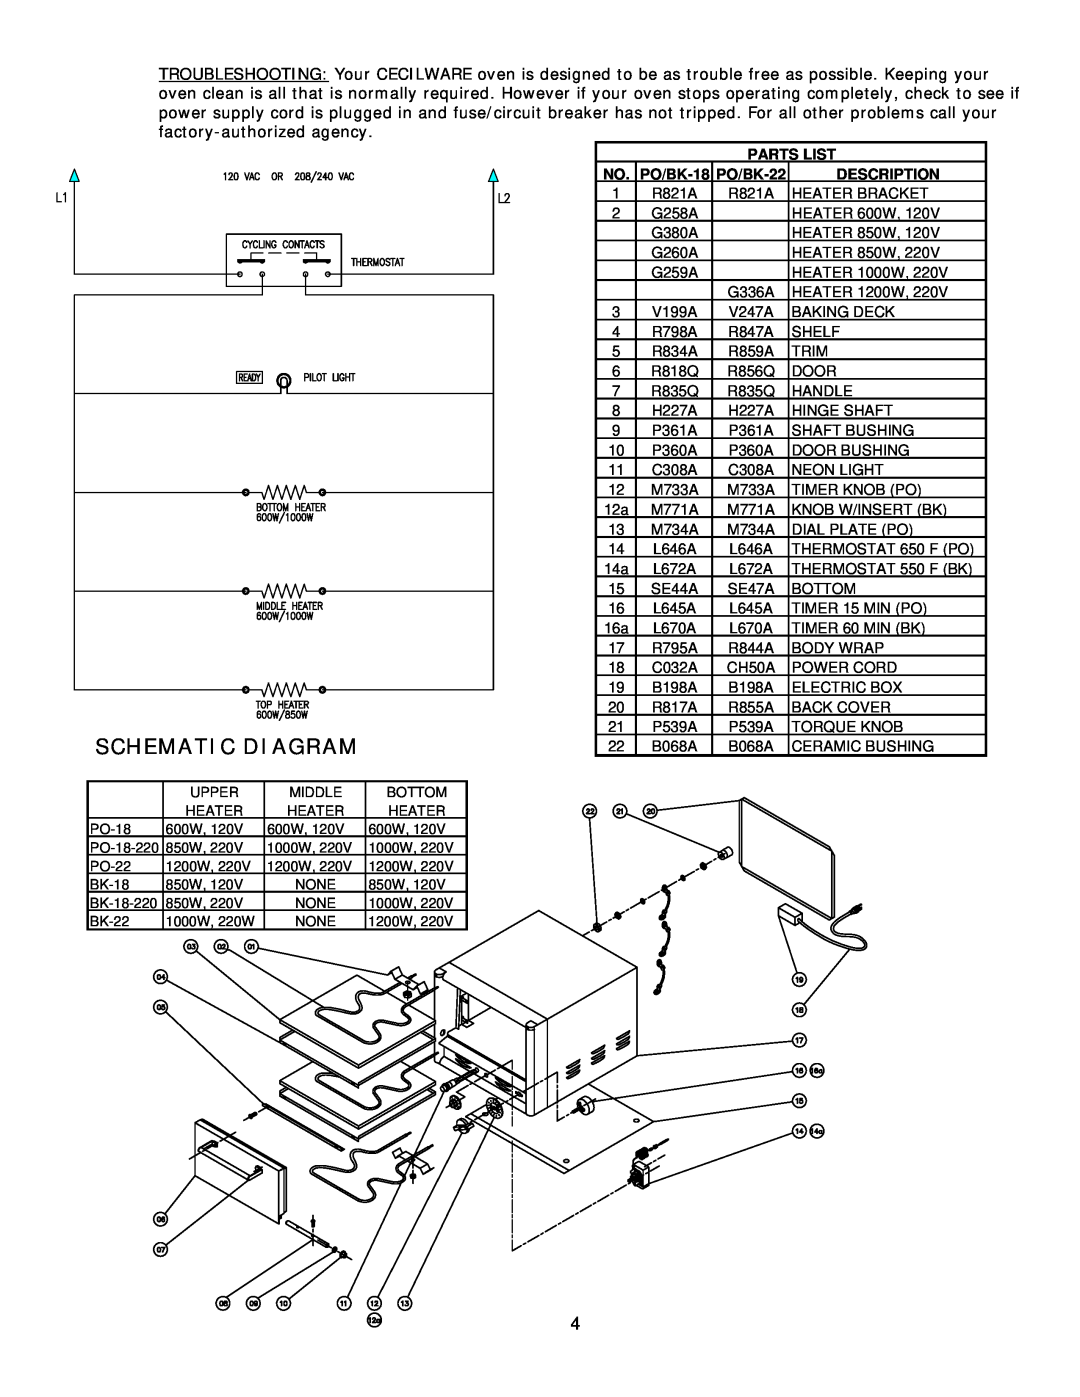 Cecilware operation manual Schematic Diagram, Parts List, PO/BK-18, PO/BK-22, Description 